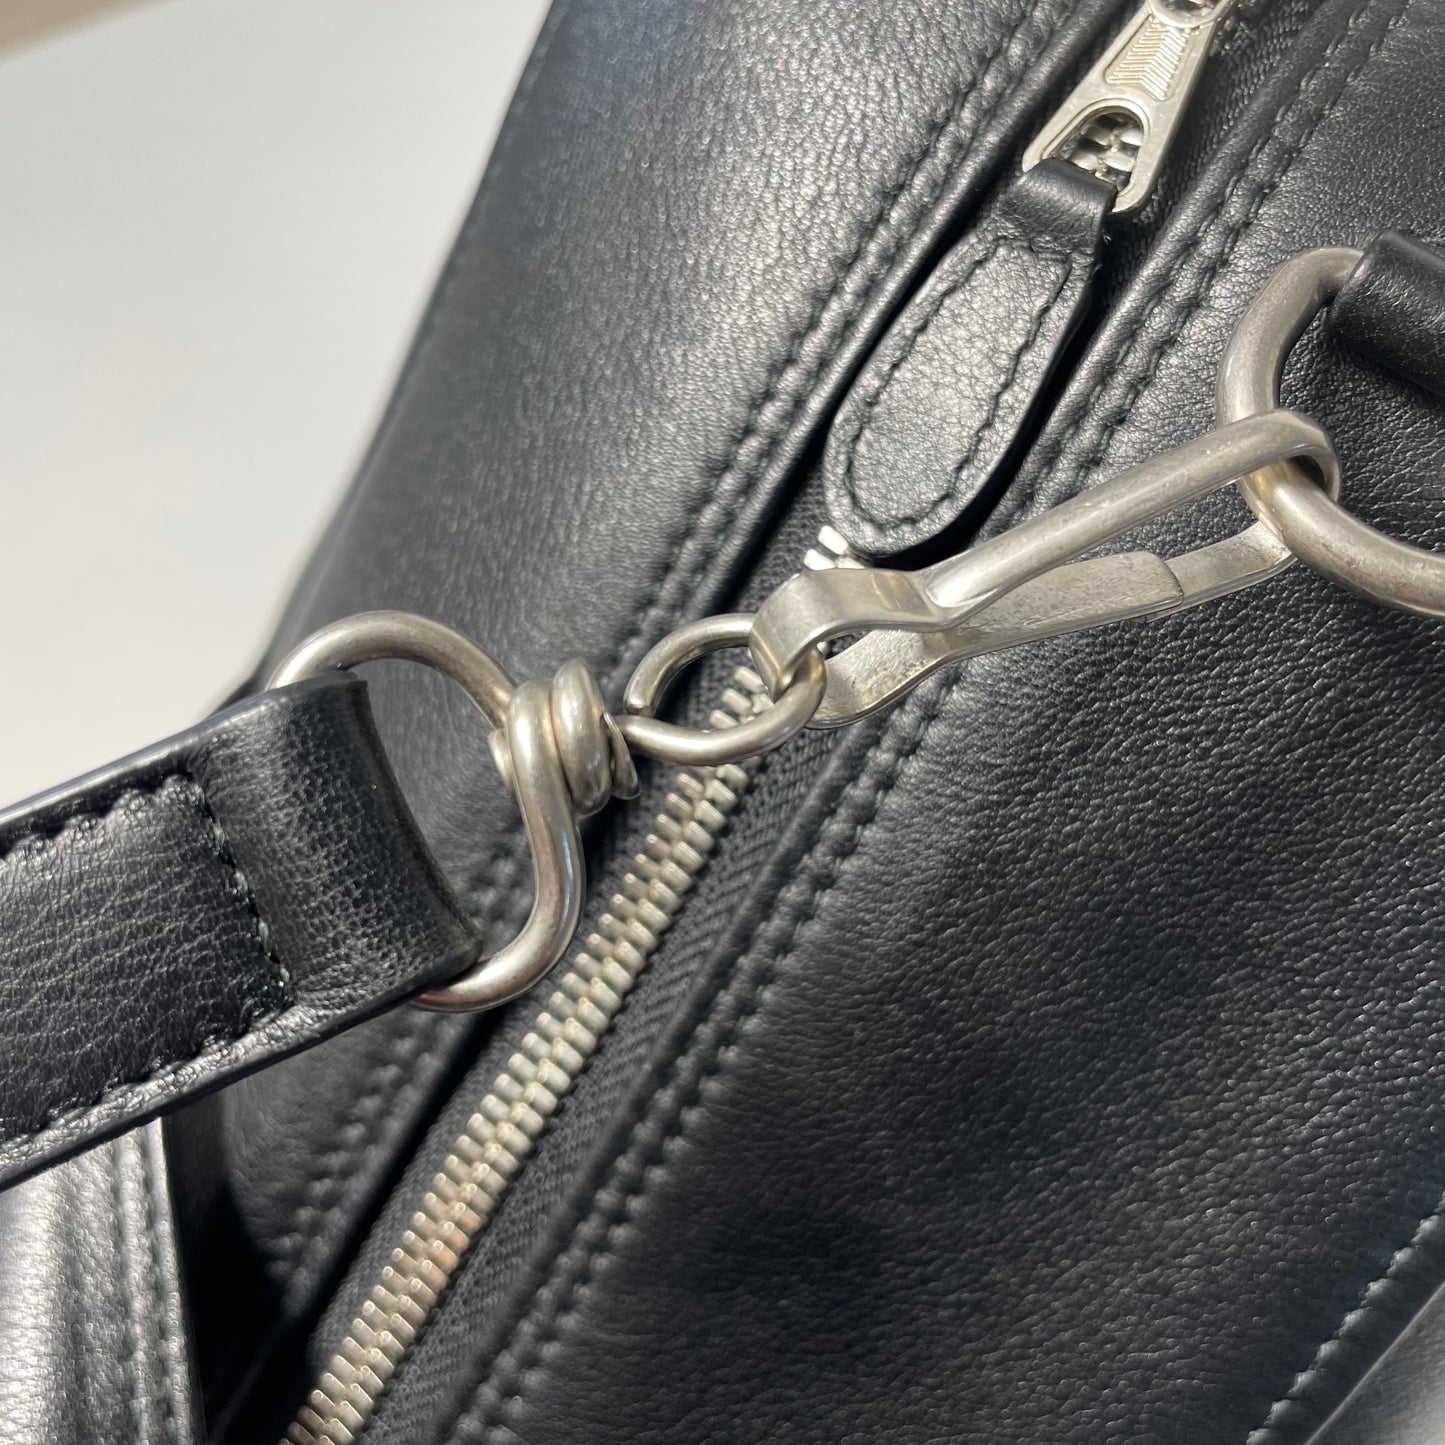 Balenciaga Black Leather Triangle Duffel Bag  Large